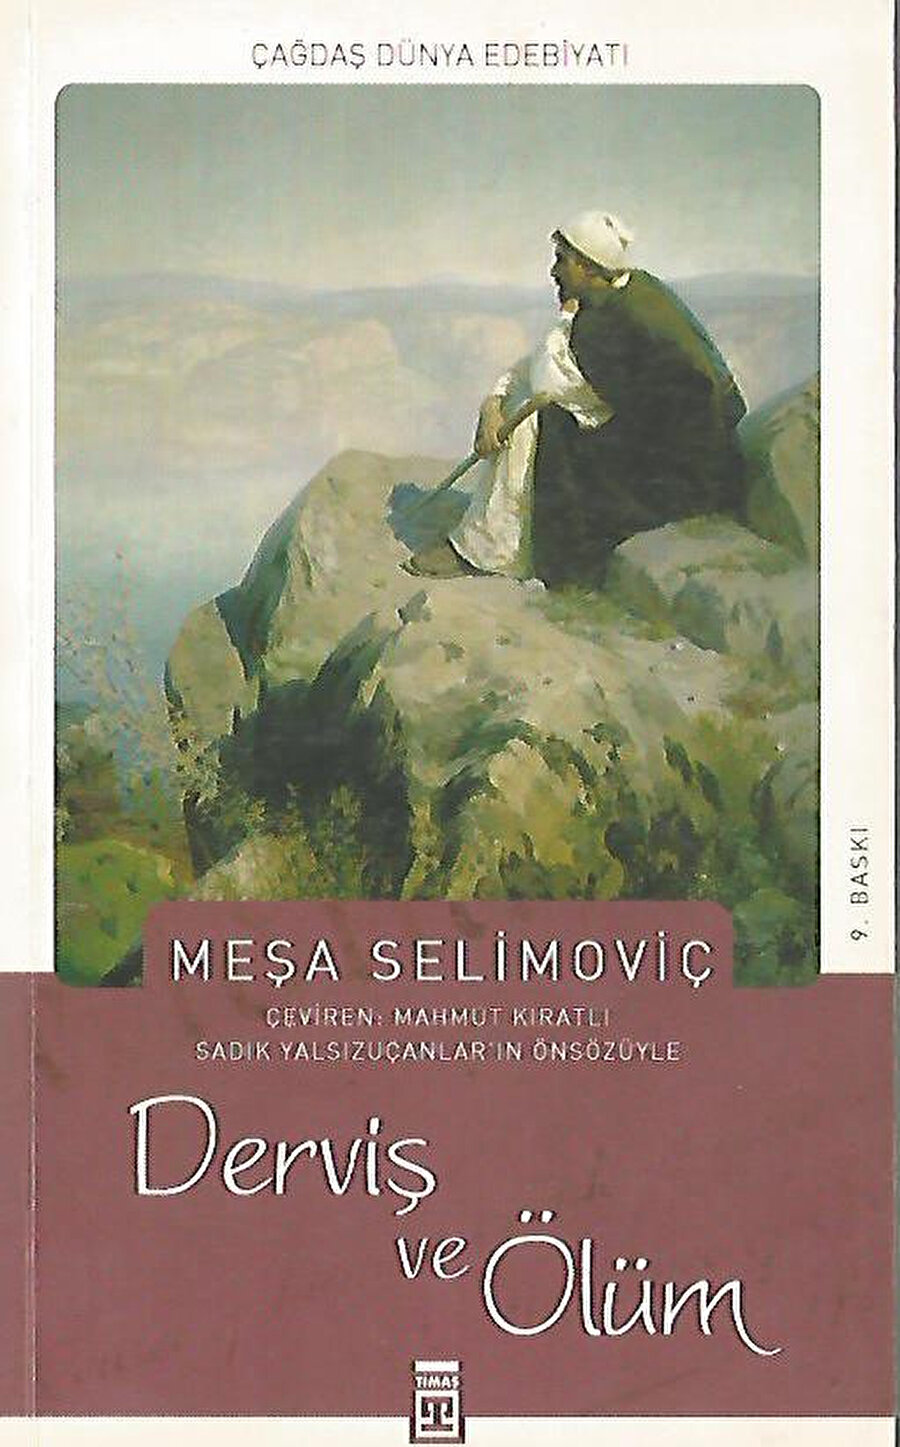 Derviş ve Ölüm, bir devrin felsefi, sosyolojik ve psikolojik analizinin yapıldığı bir romandır. 